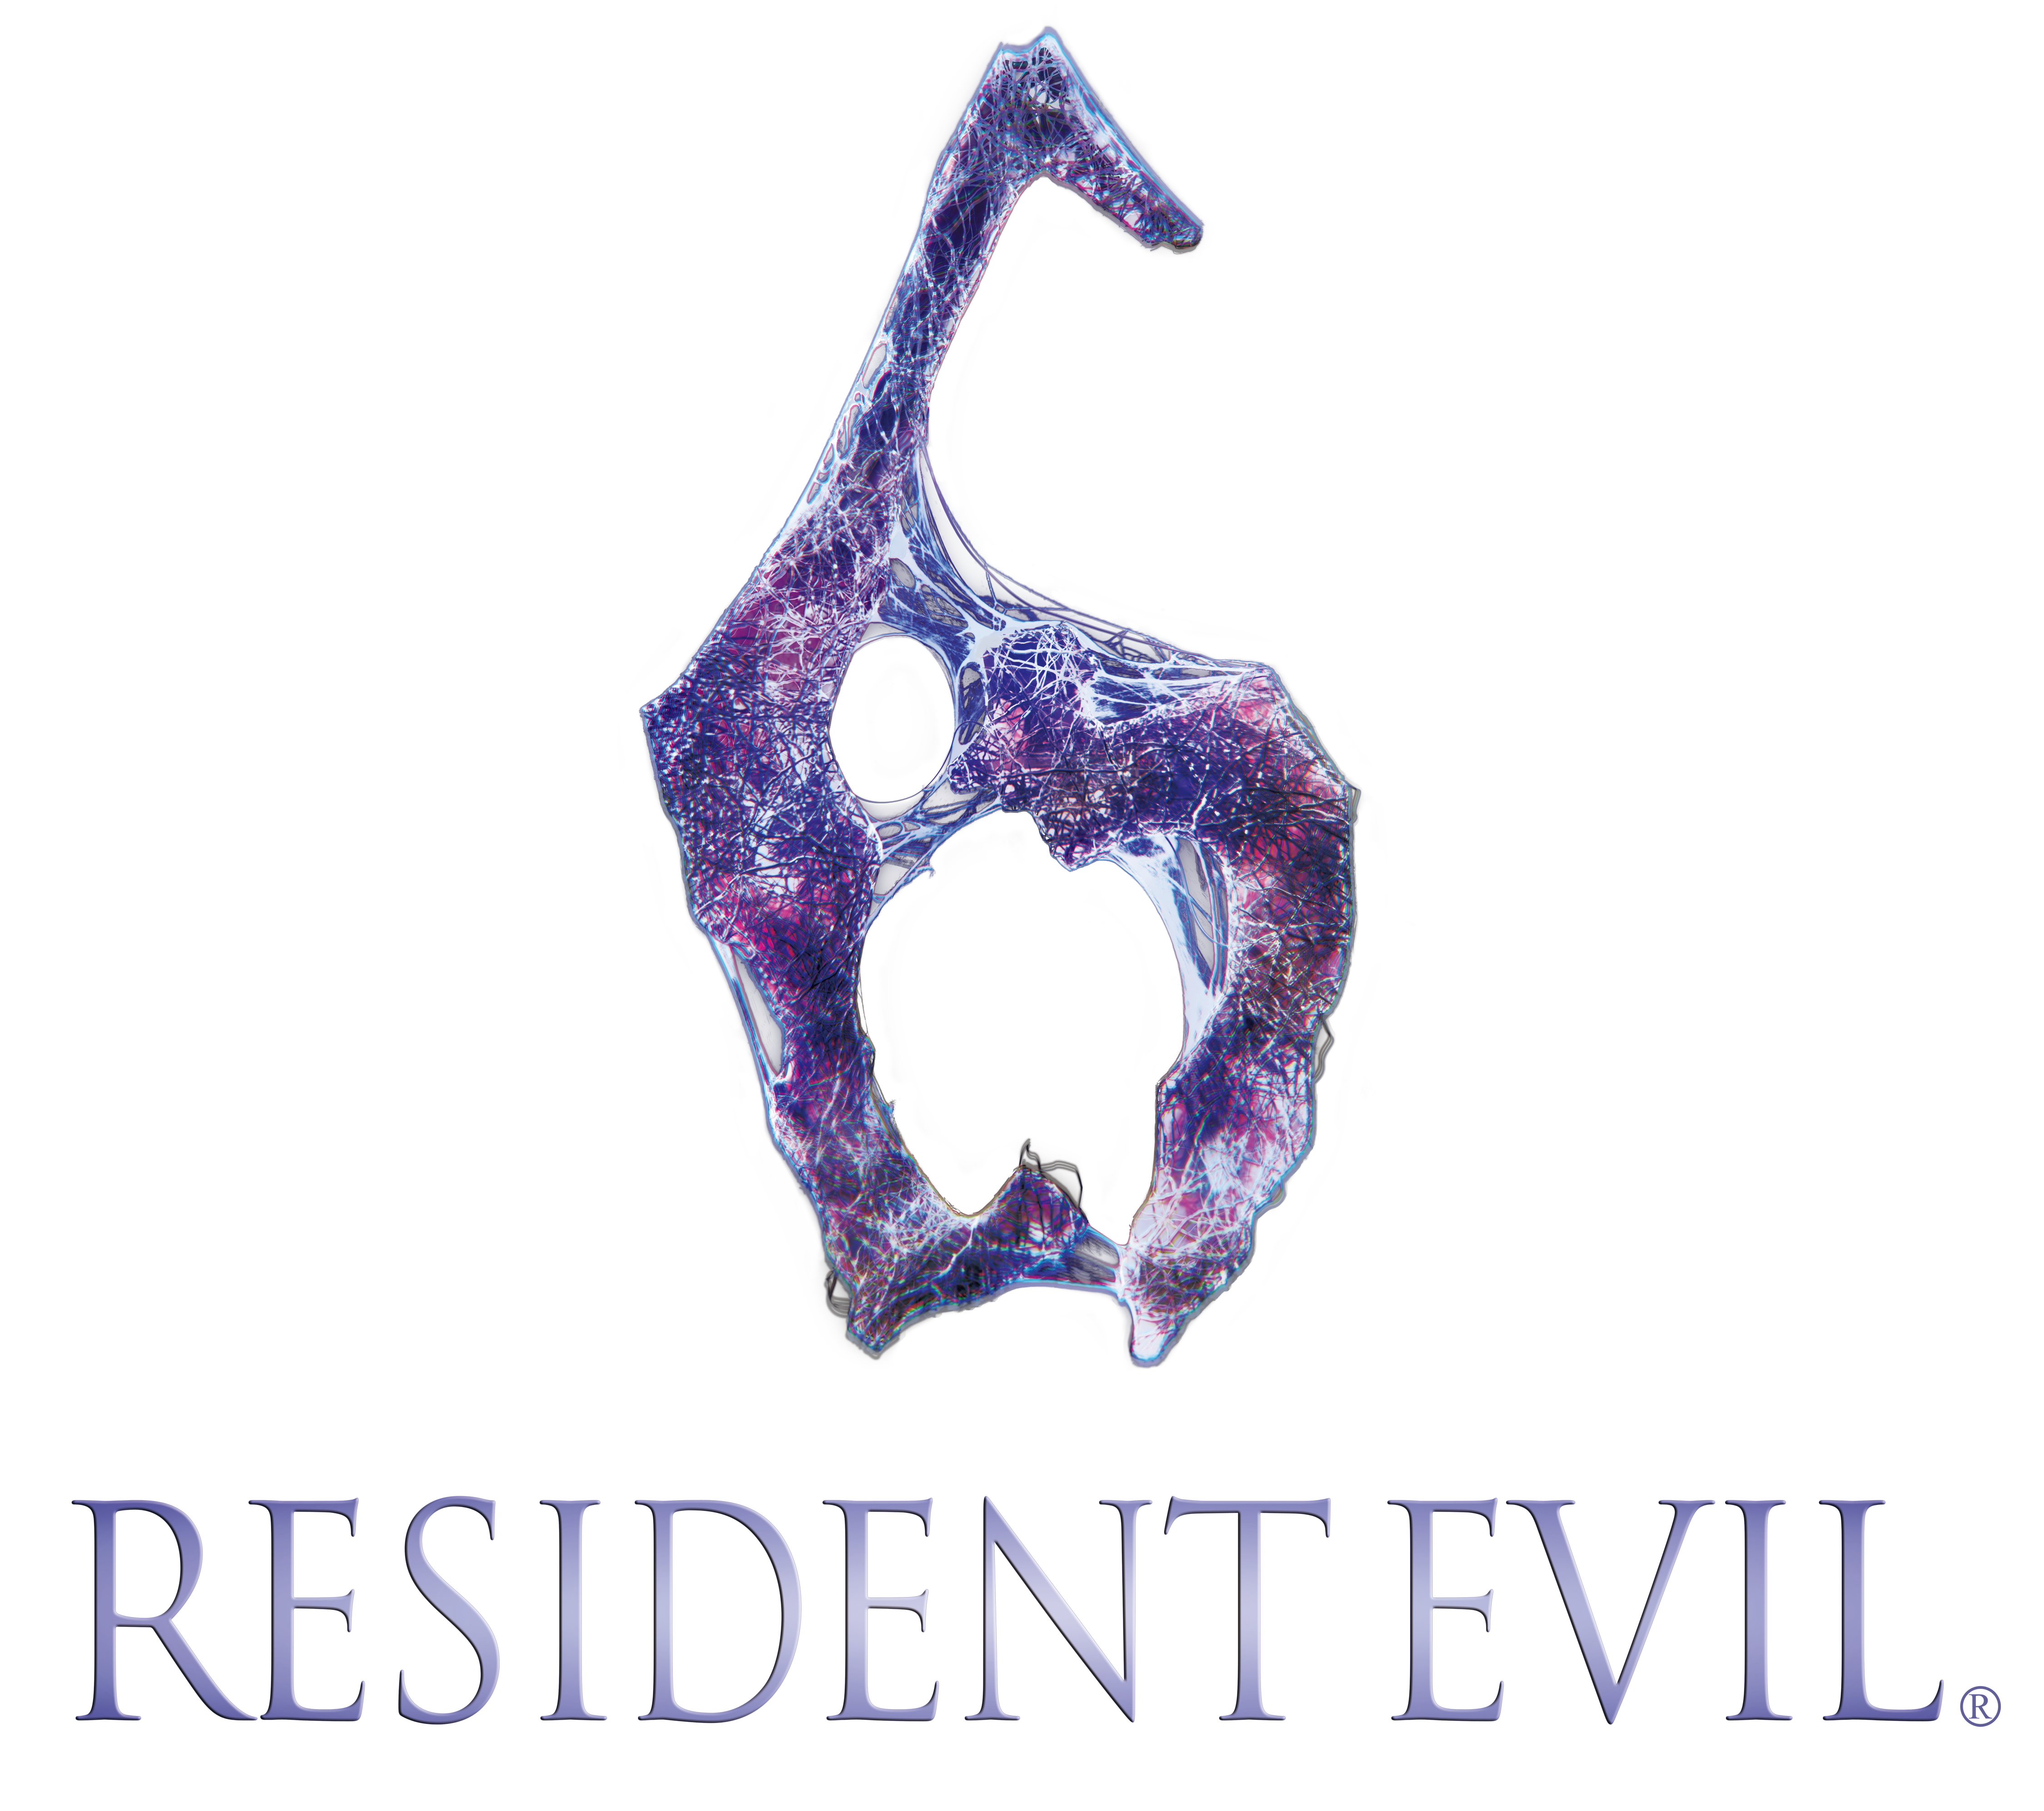 Resident Evil 7 Logos